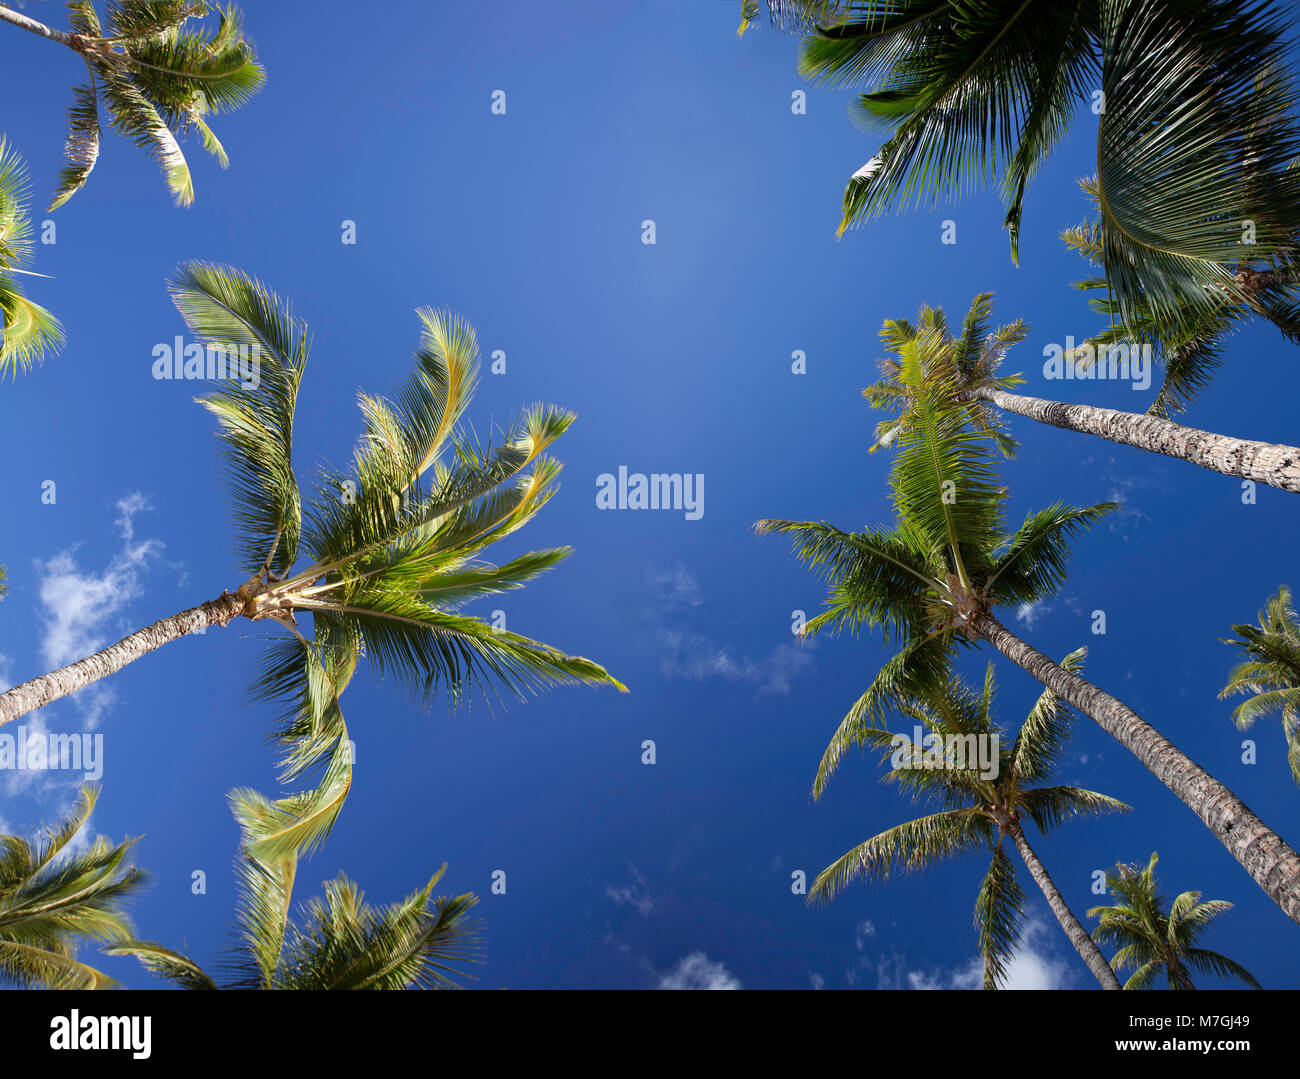 Una vista dal di sotto di palme e cielo blu, Maui, Hawaii. Due fotografie sono state combinato digitalmente per creare questo file di grandi dimensioni immagine. Foto Stock